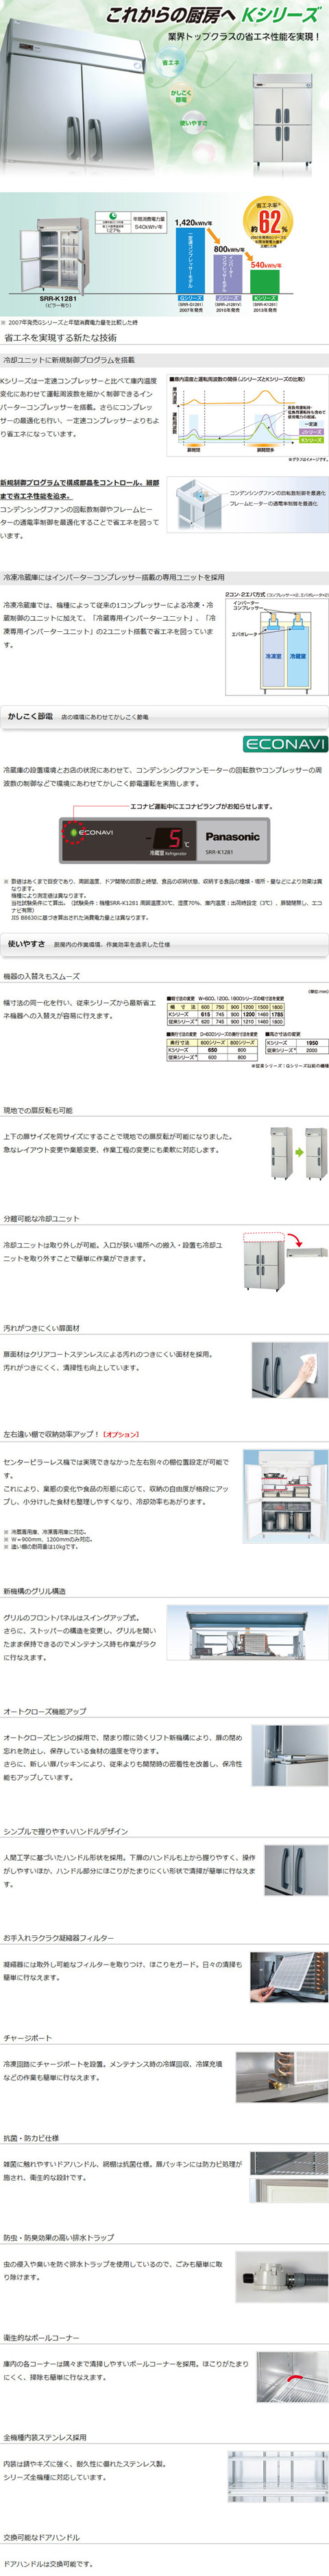 パナソニック縦型インバーター冷蔵庫 型式：SRR-K1883B（旧SRR-K1883A）送料無料（メーカーより直送）メーカー保証付  r0110002 空調店舗厨房センター 通販 